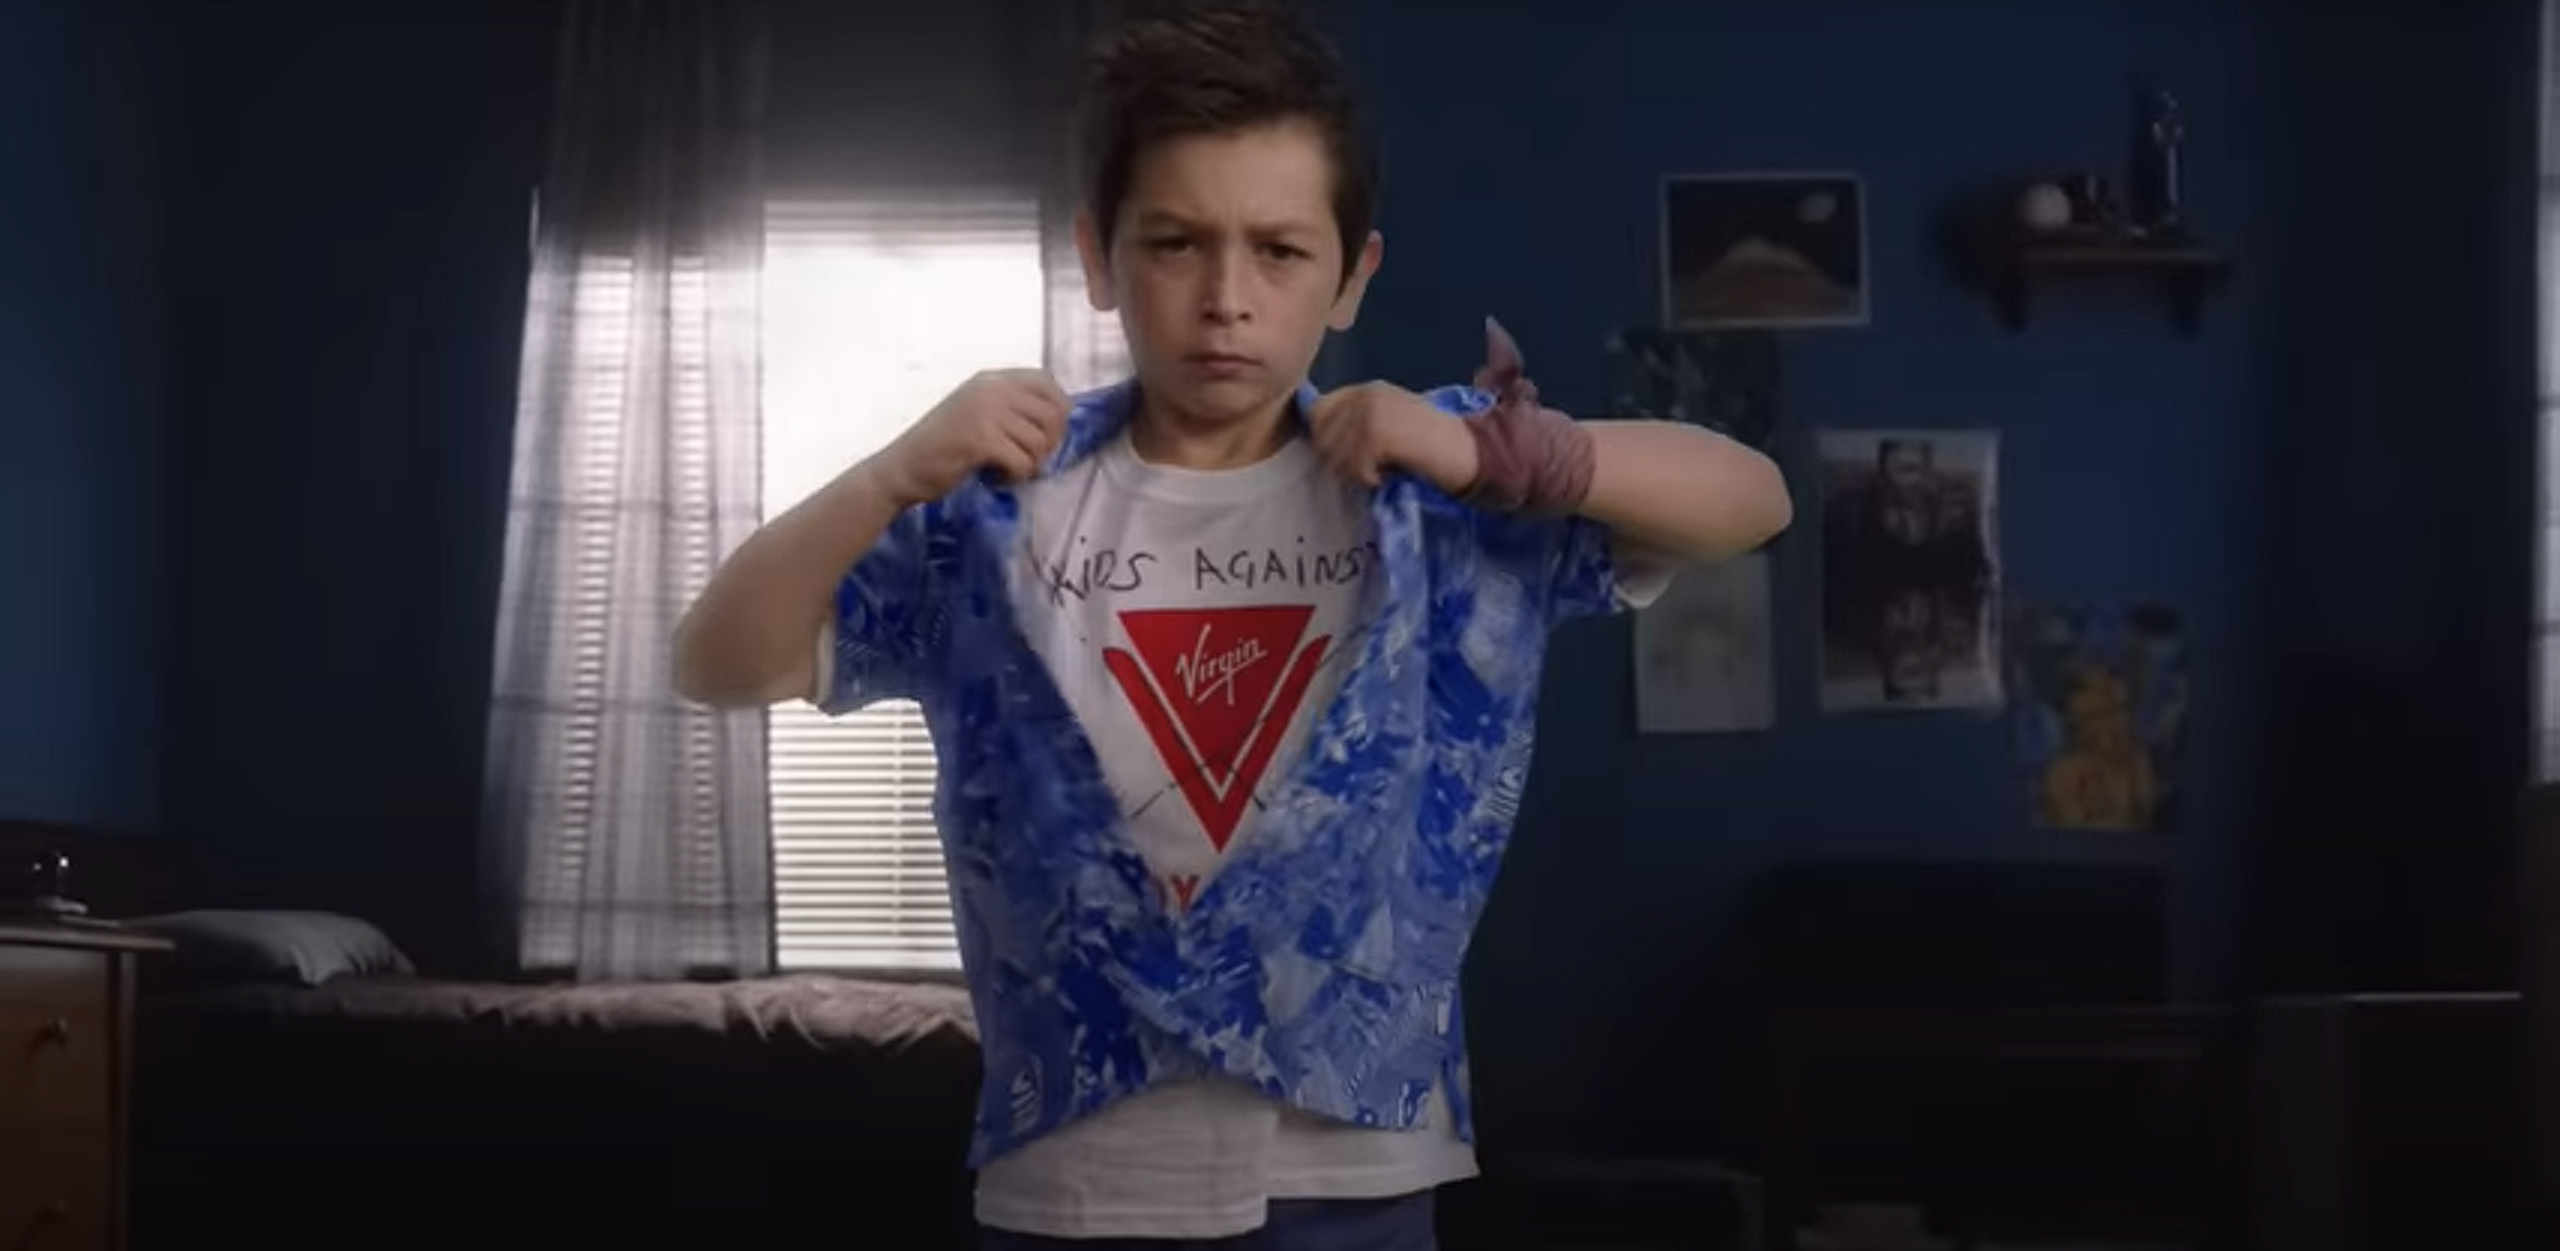 Un niño muestra una camiseta en señal de disconformidad con Virgin